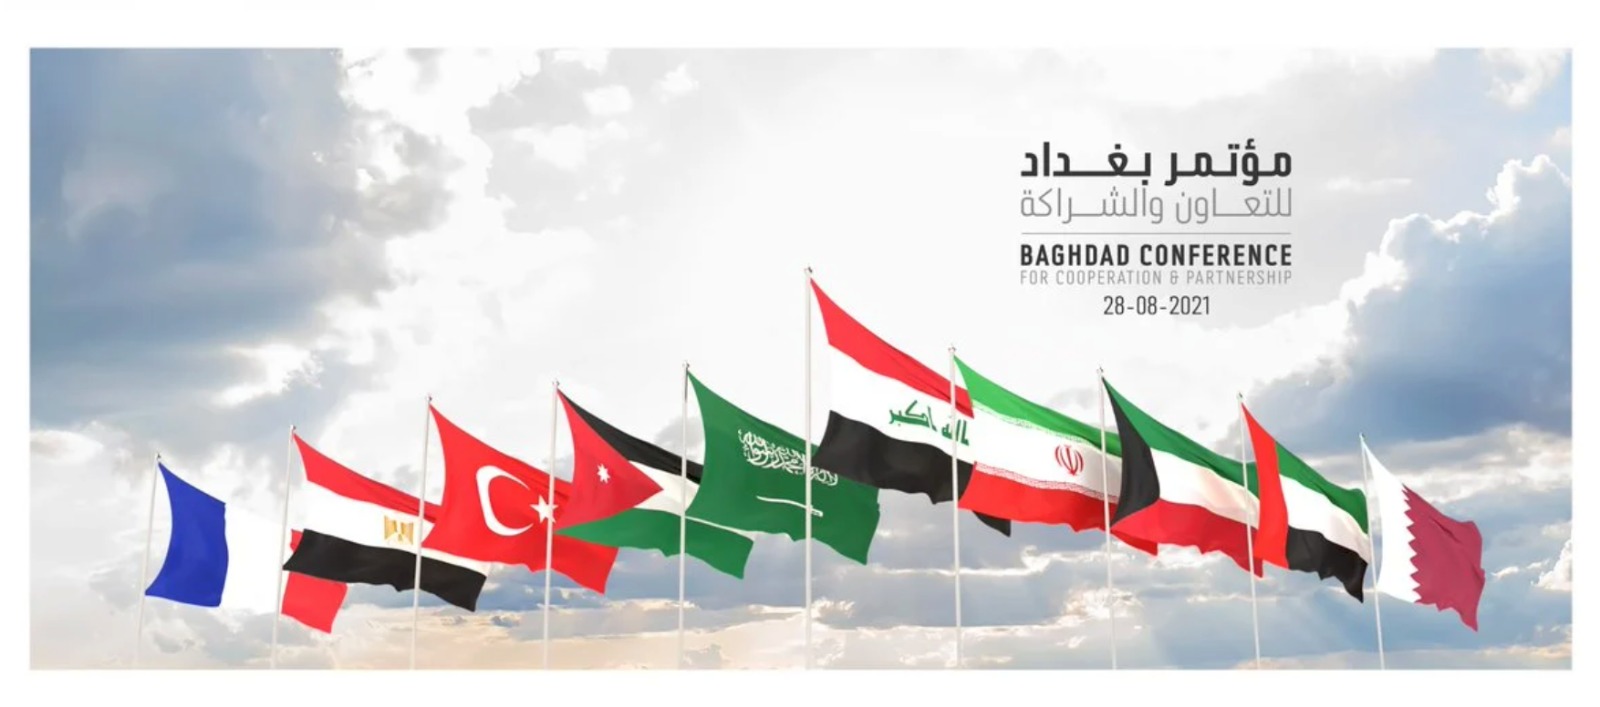 انطلاق مؤتمر بغداد للتعاون والشراكة بمشاركة تسع دول 